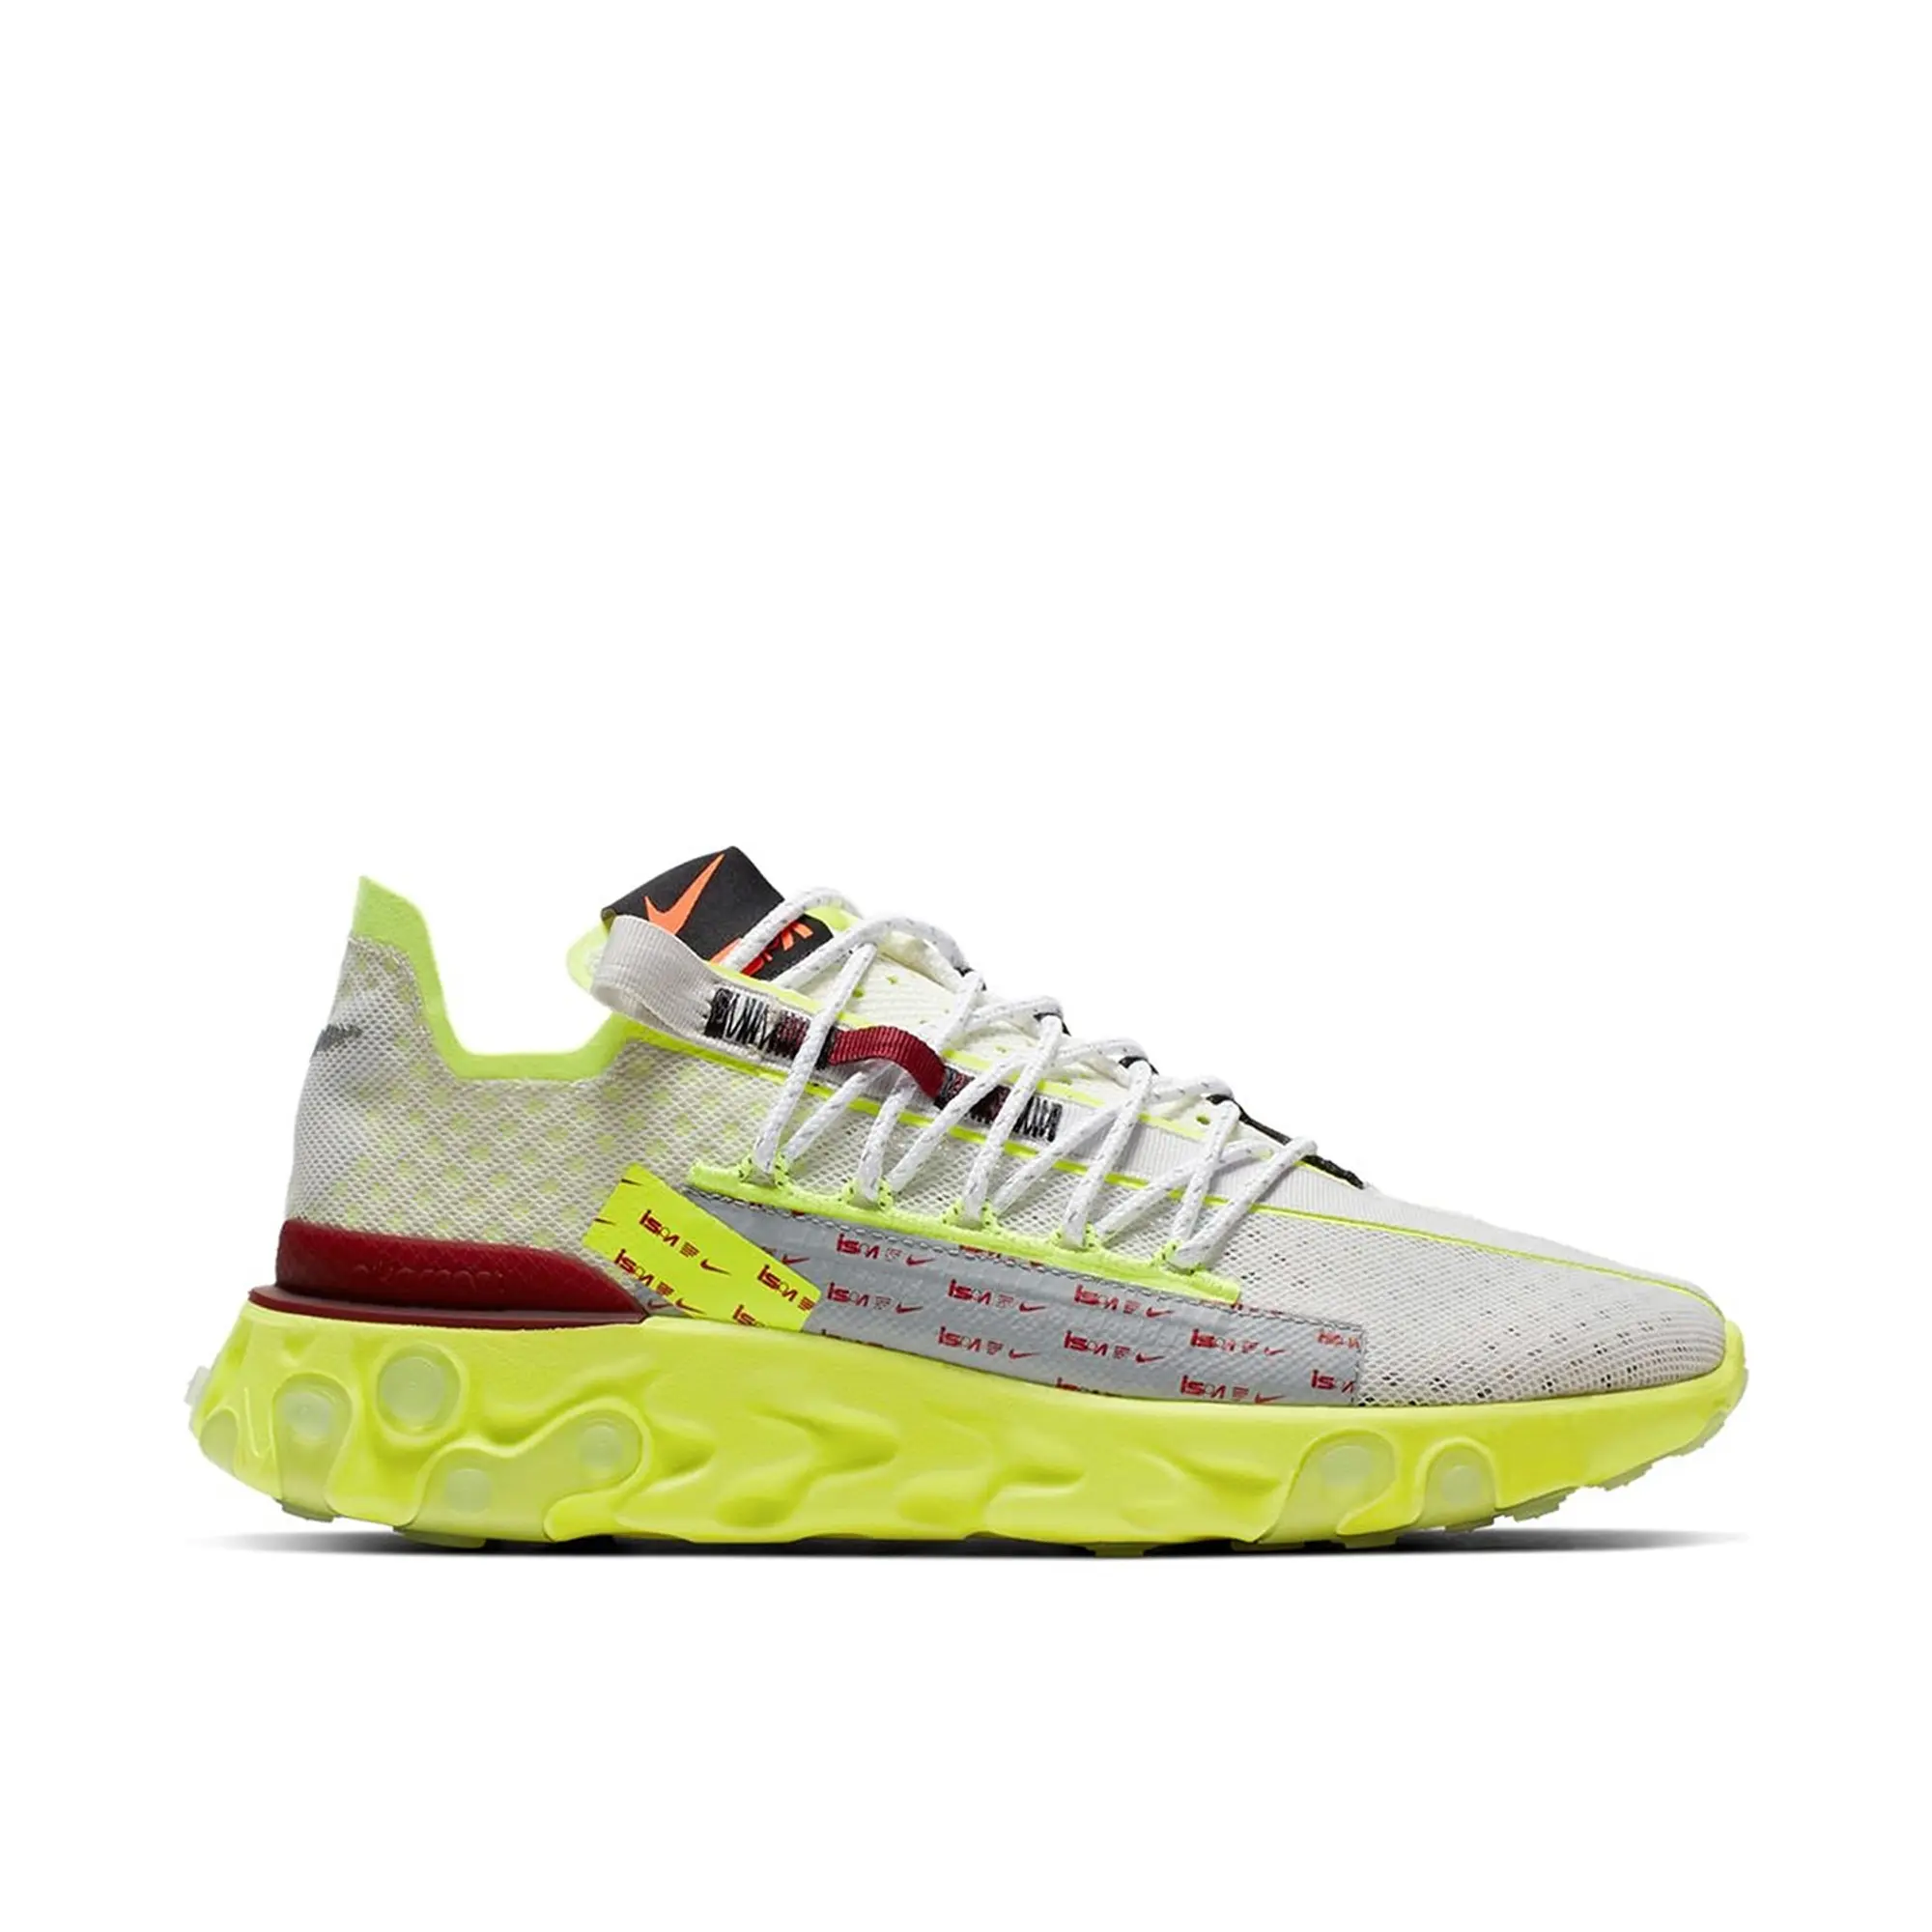 Nike React Runner ISPA White Volt